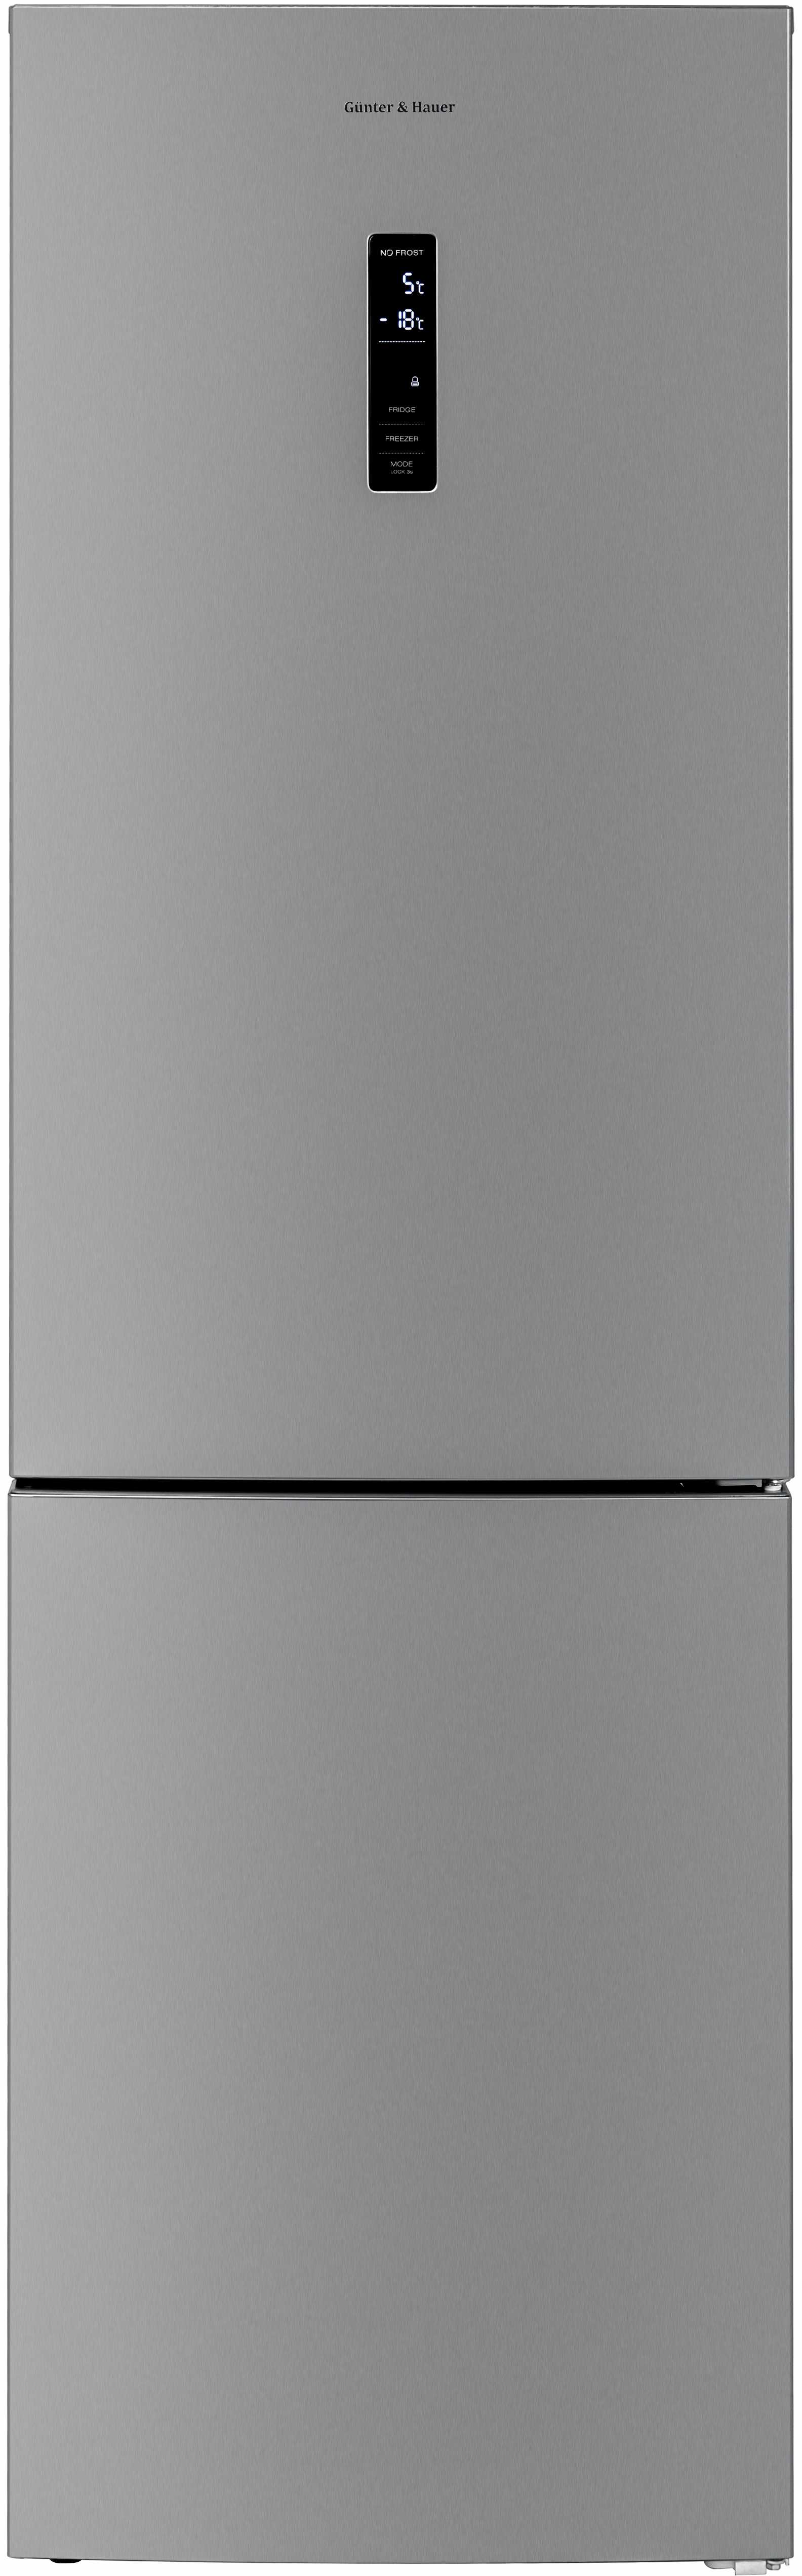 Холодильник Gunter&Hauer   FN 342 IDX